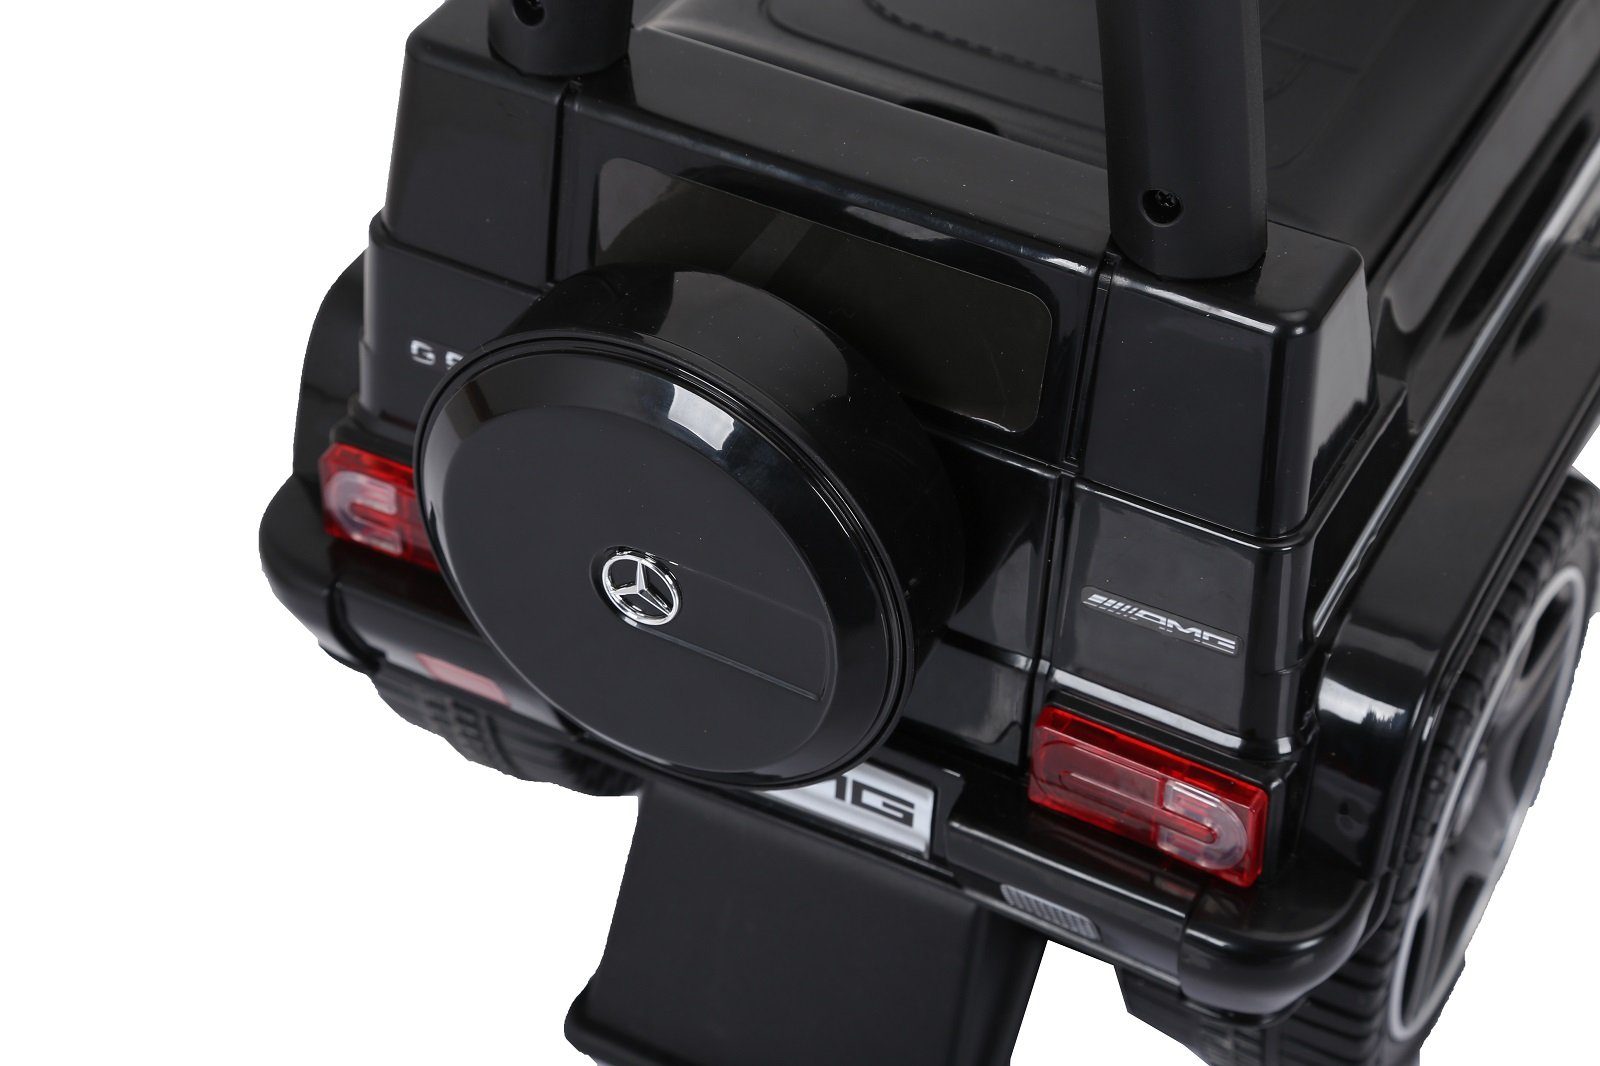 ZELLERFELD Spielzeug-Auto Rutsch-Auto Kinderauto Bobby Car Mercedes Benz G  63 AMG Rutscher Baby Kinder USB-Anschluss mit MP3-Unterstützung schwarz